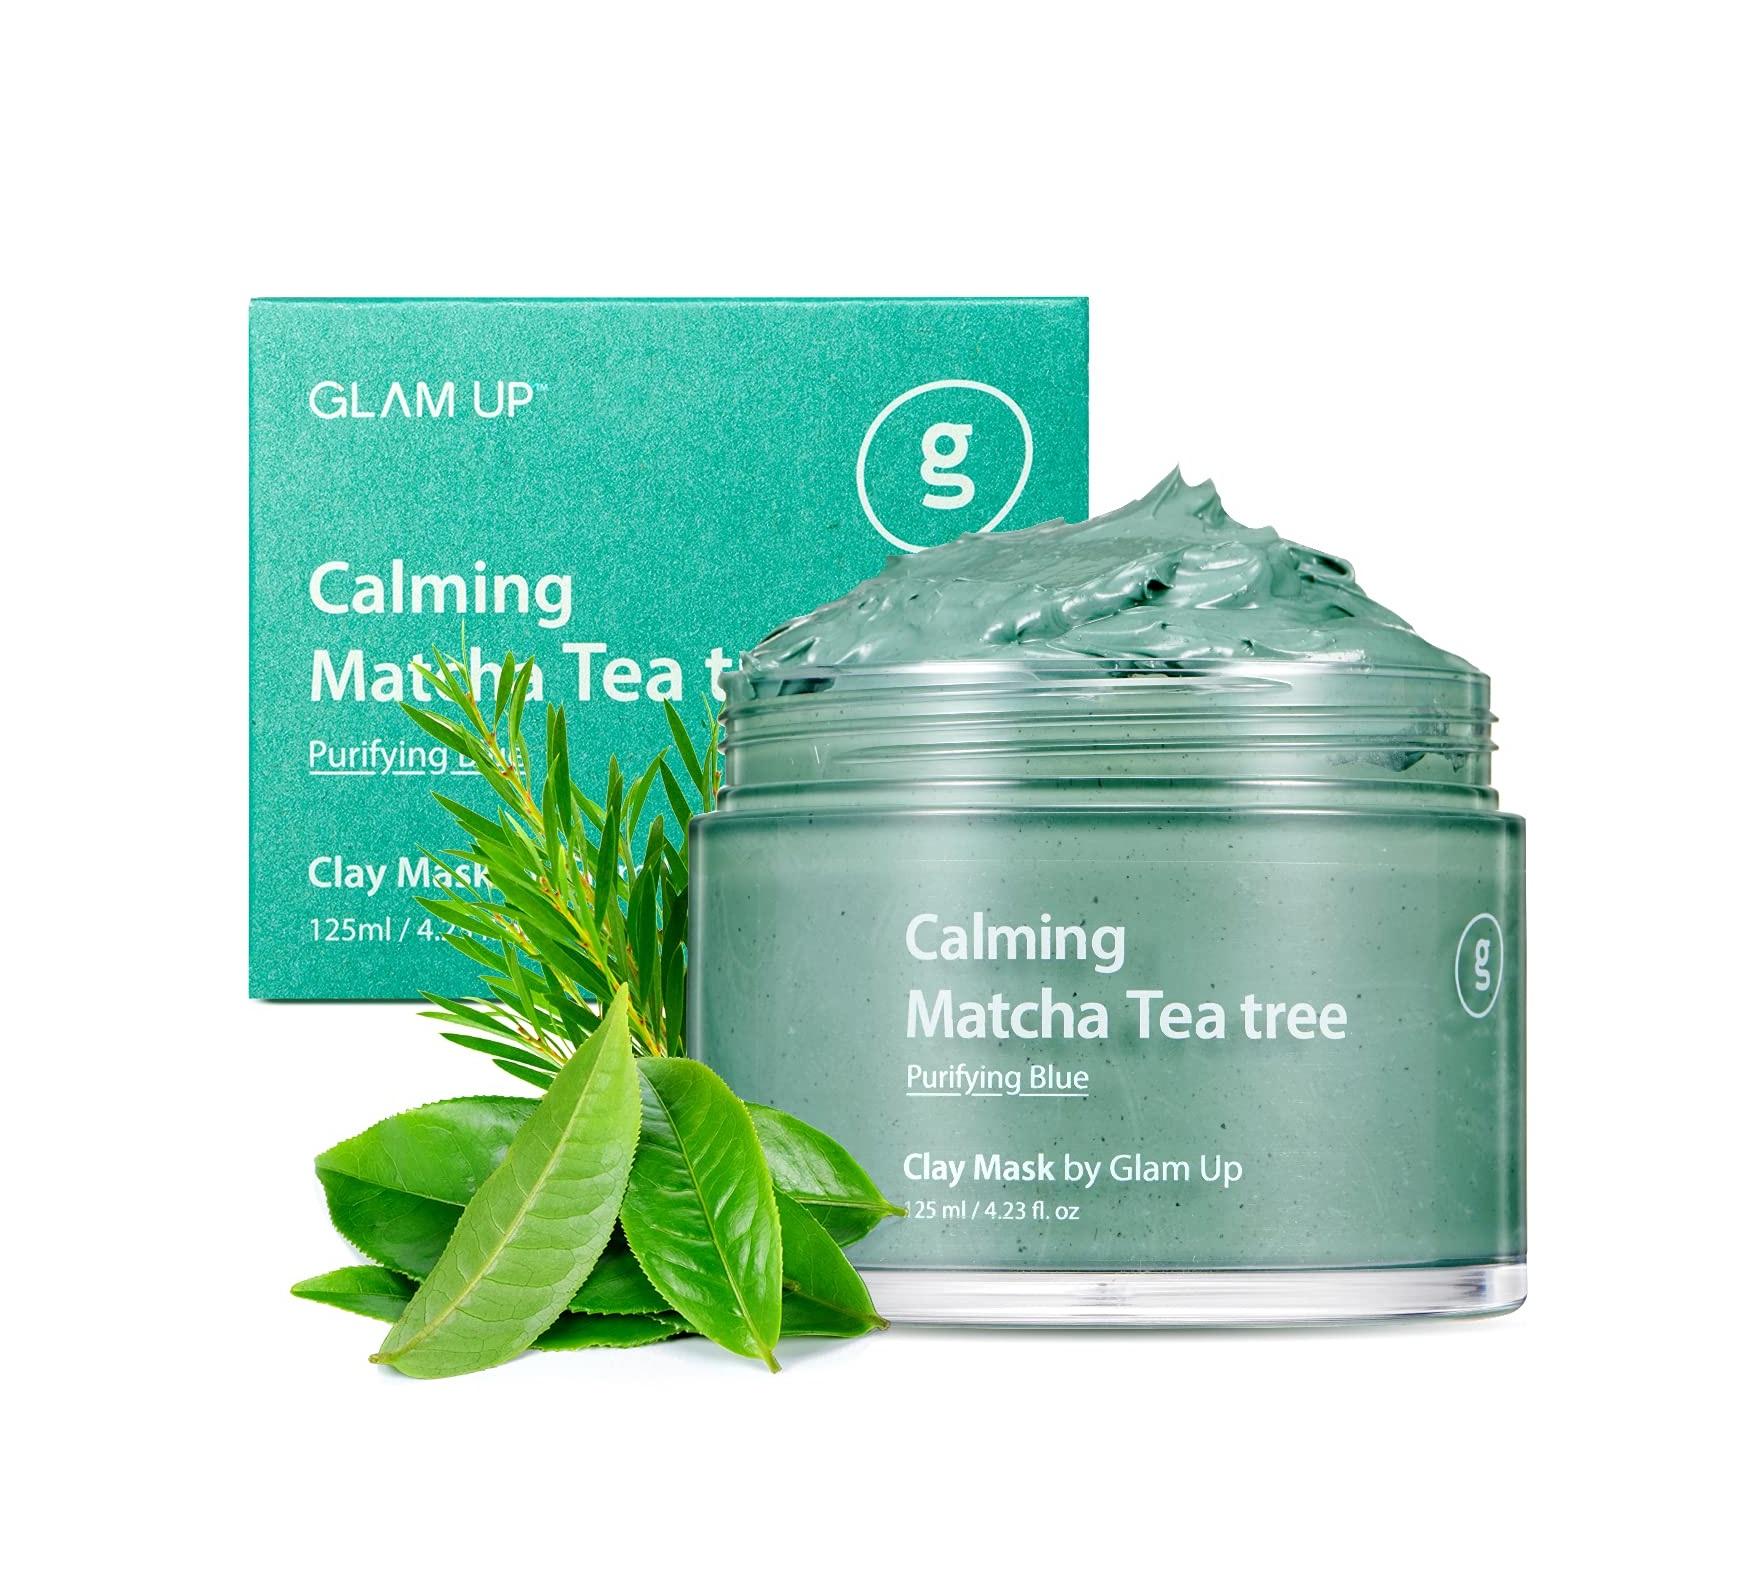 Calming Matcha Tea tree Clay Mask